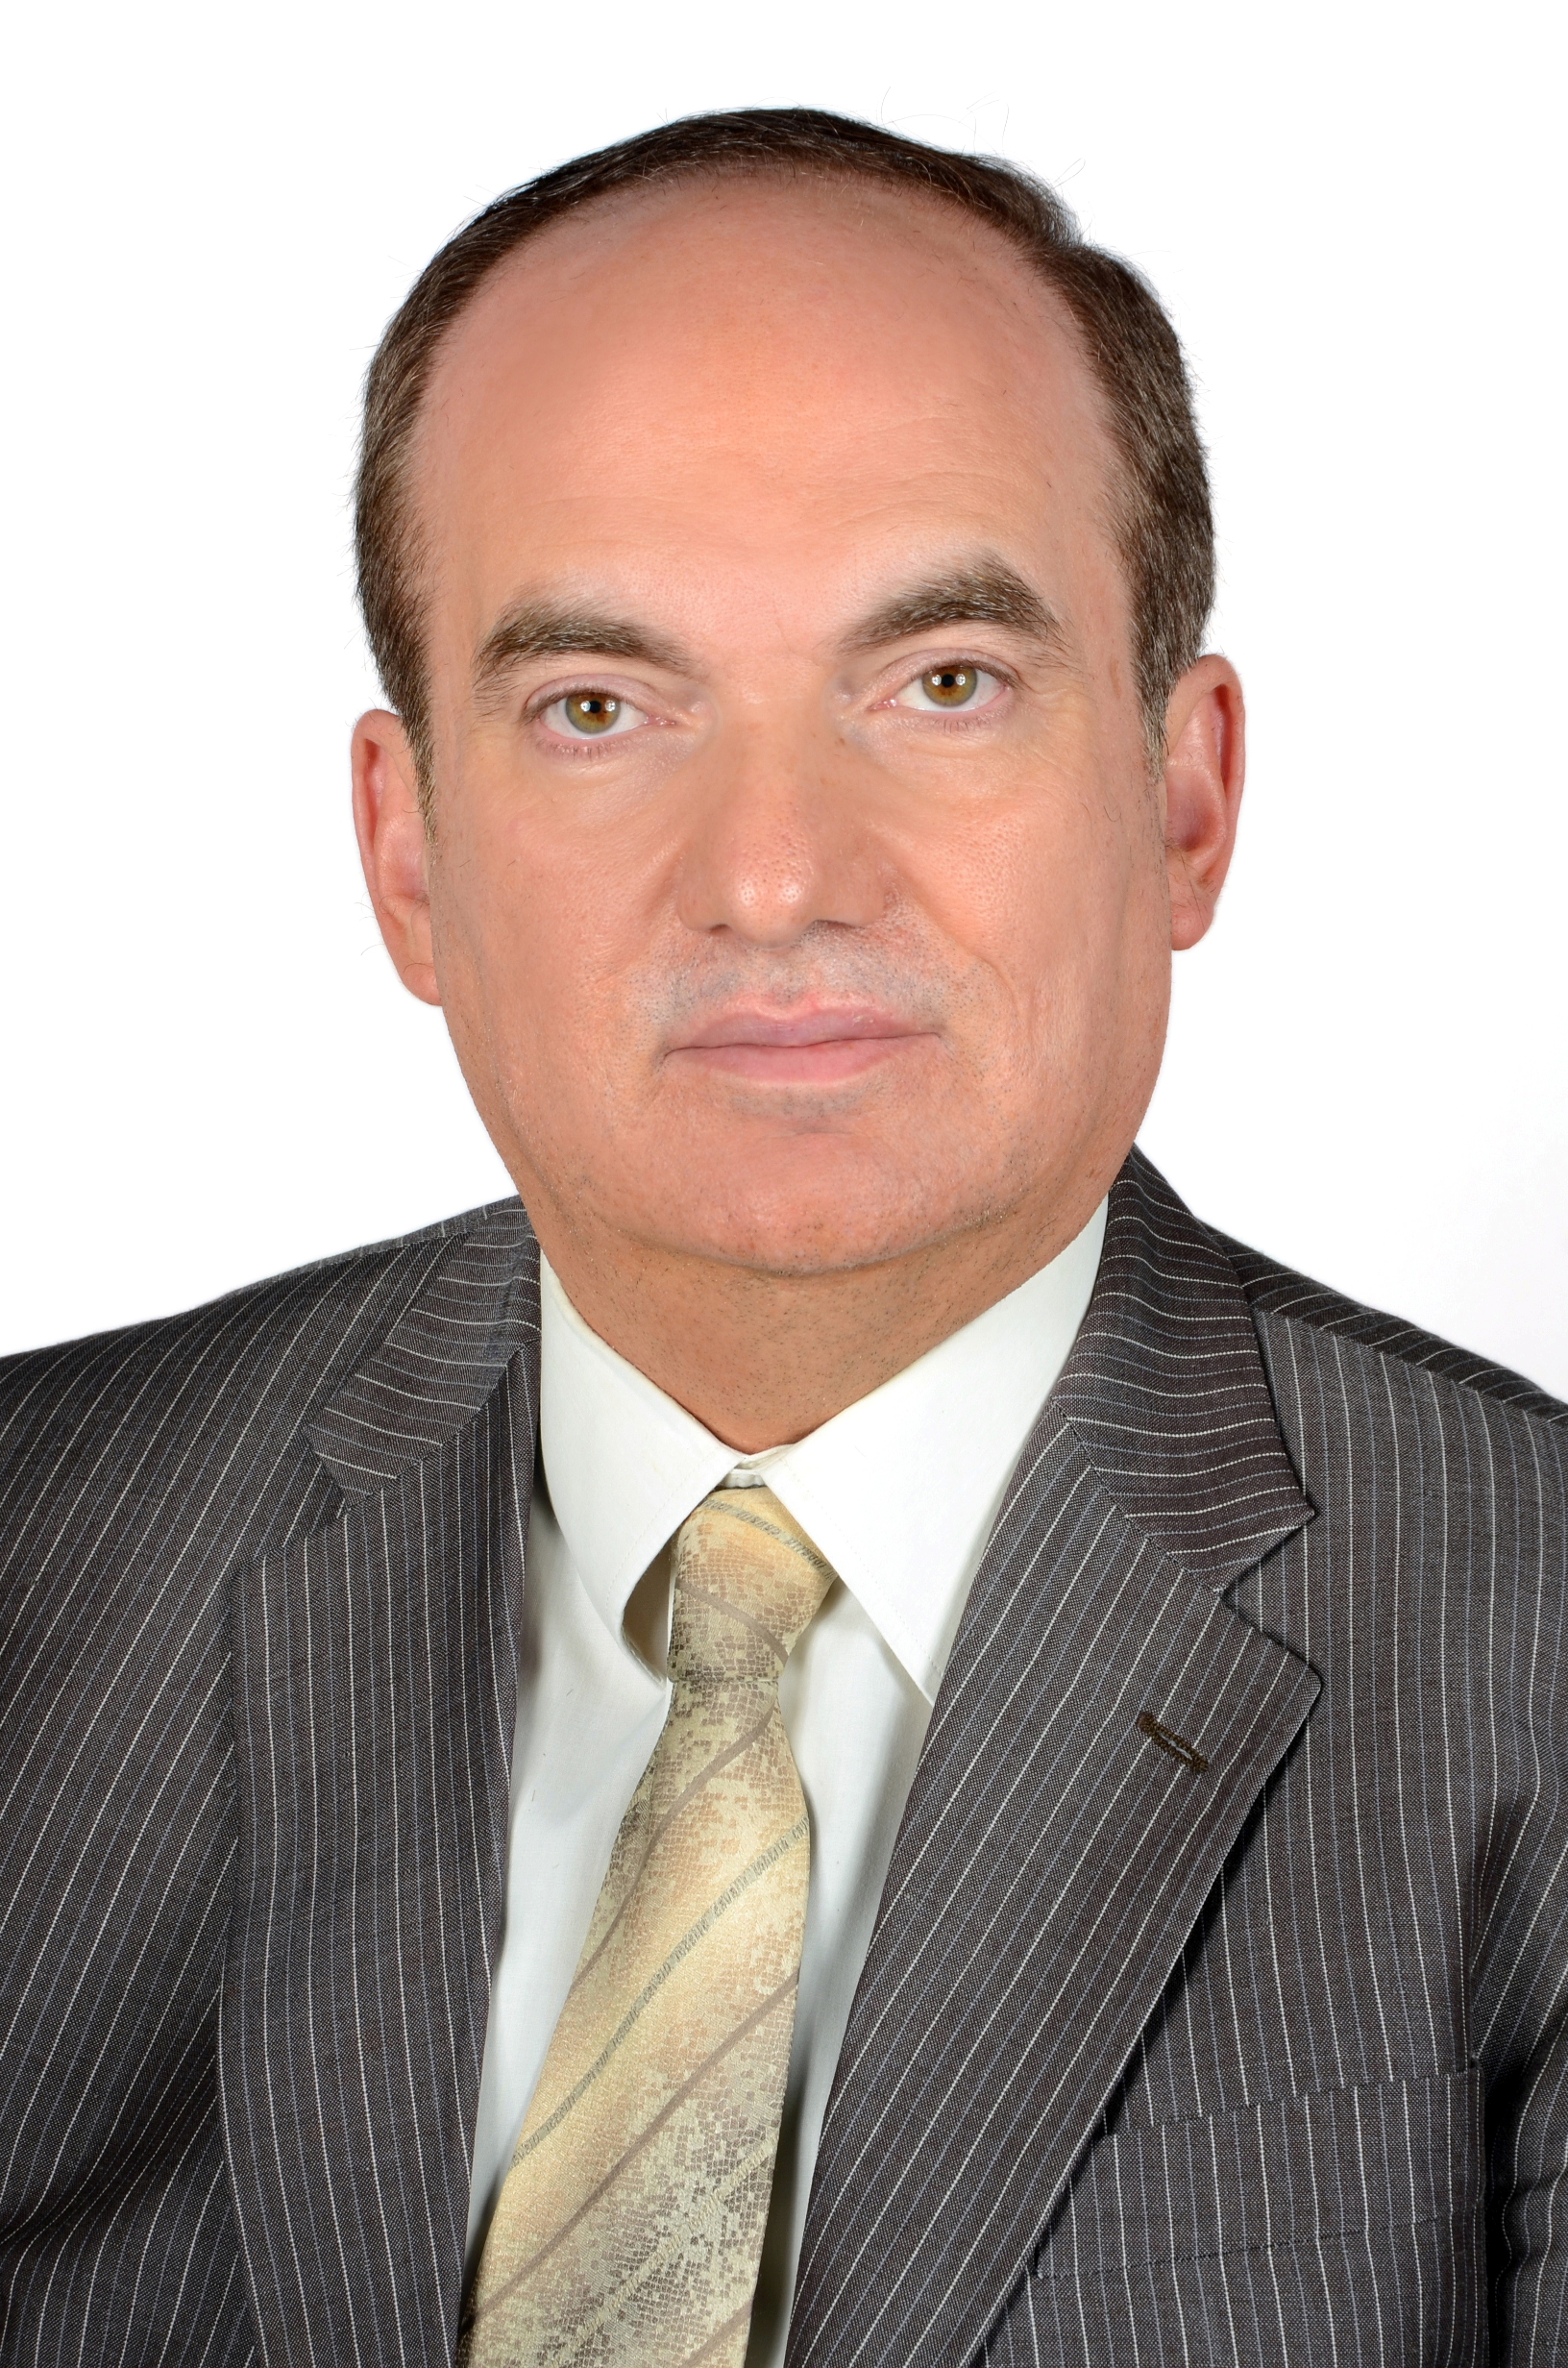 Dr. Samer Ellahham